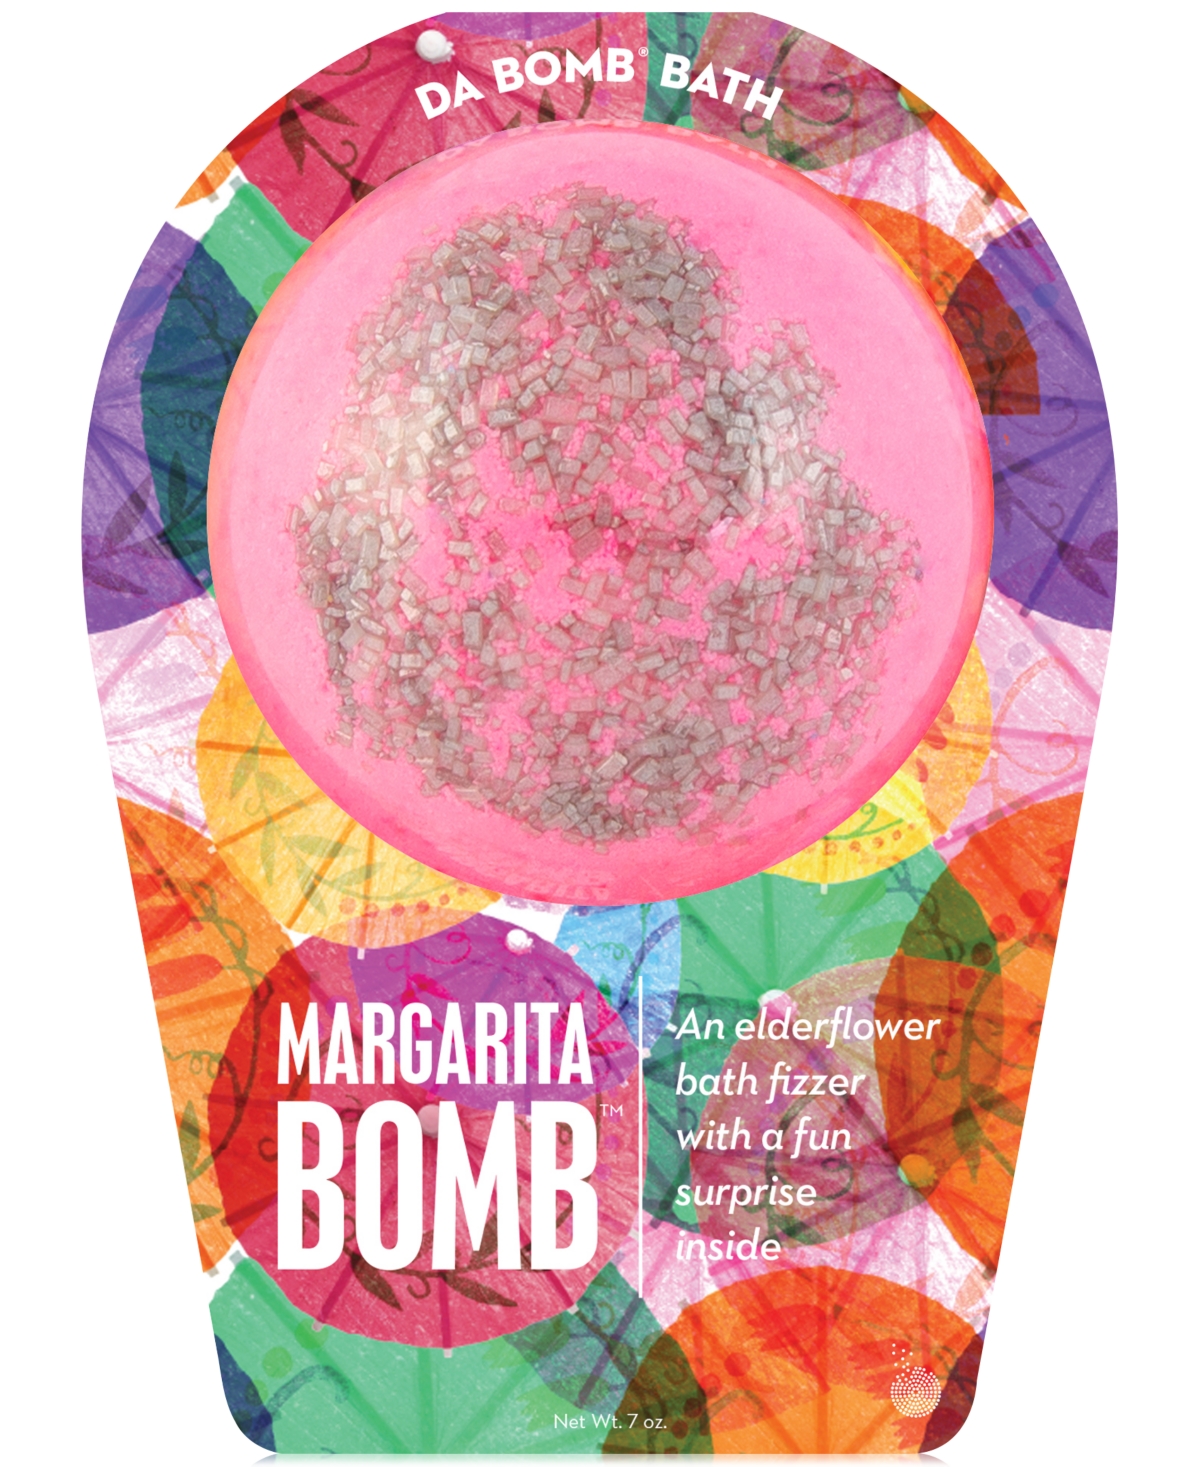 Da Bomb Margarita Bath Bomb, 7-oz.